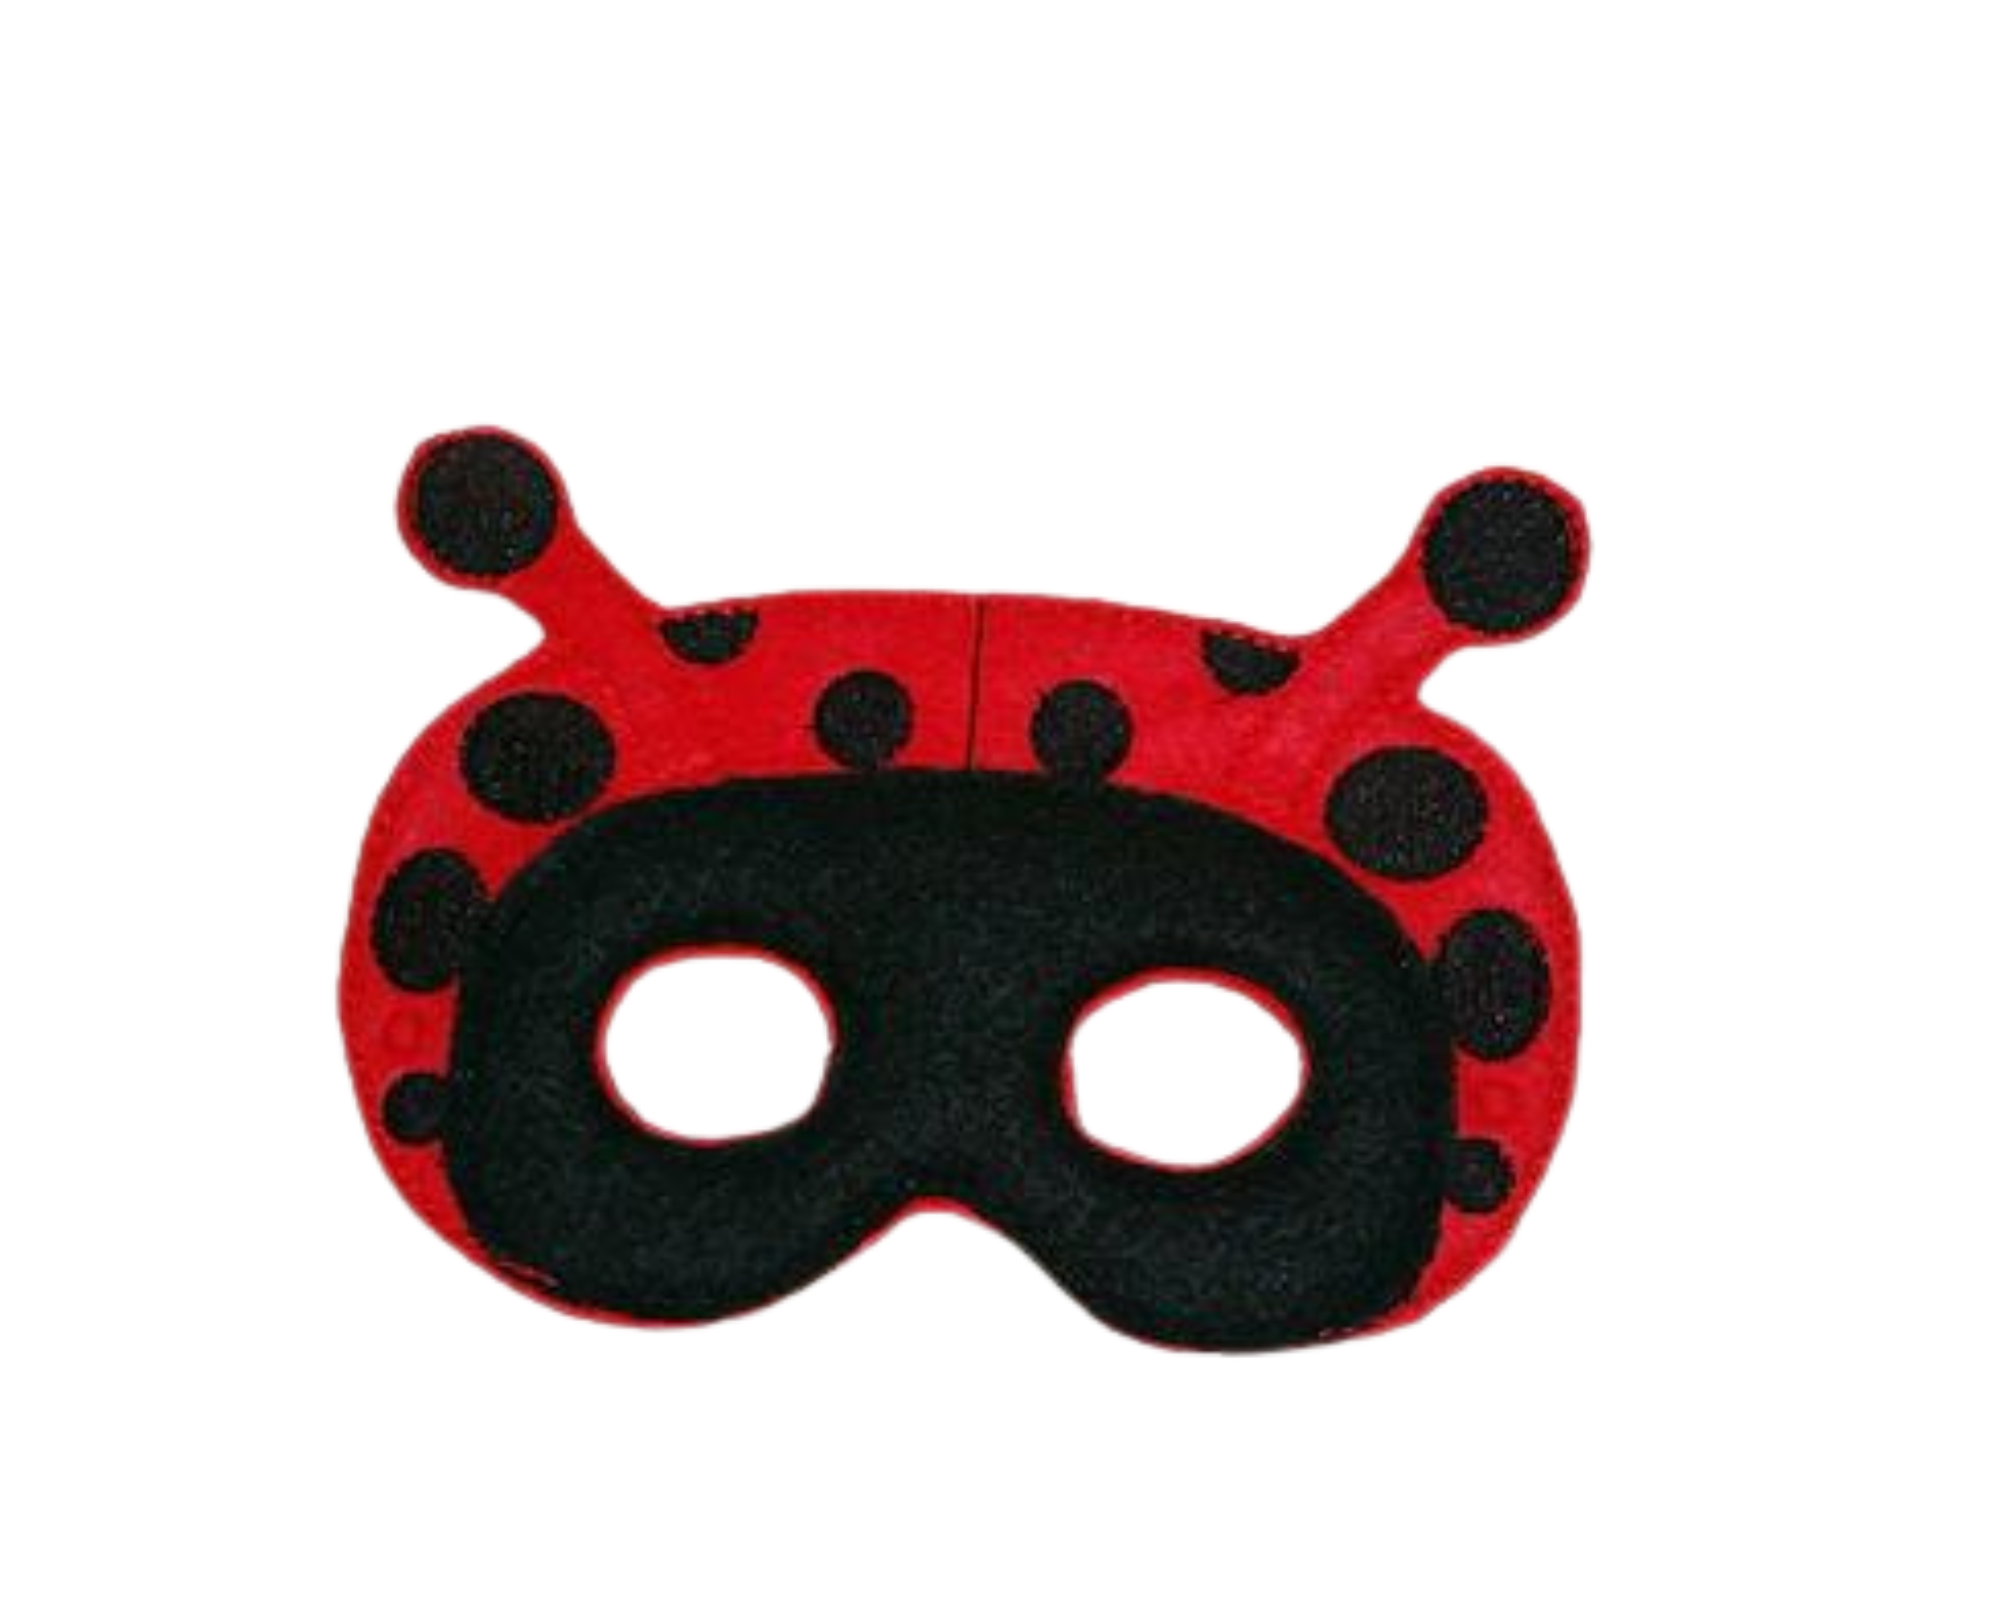 Handcrafted Felt pretend play ladybug mask for kids – Garnished Girl